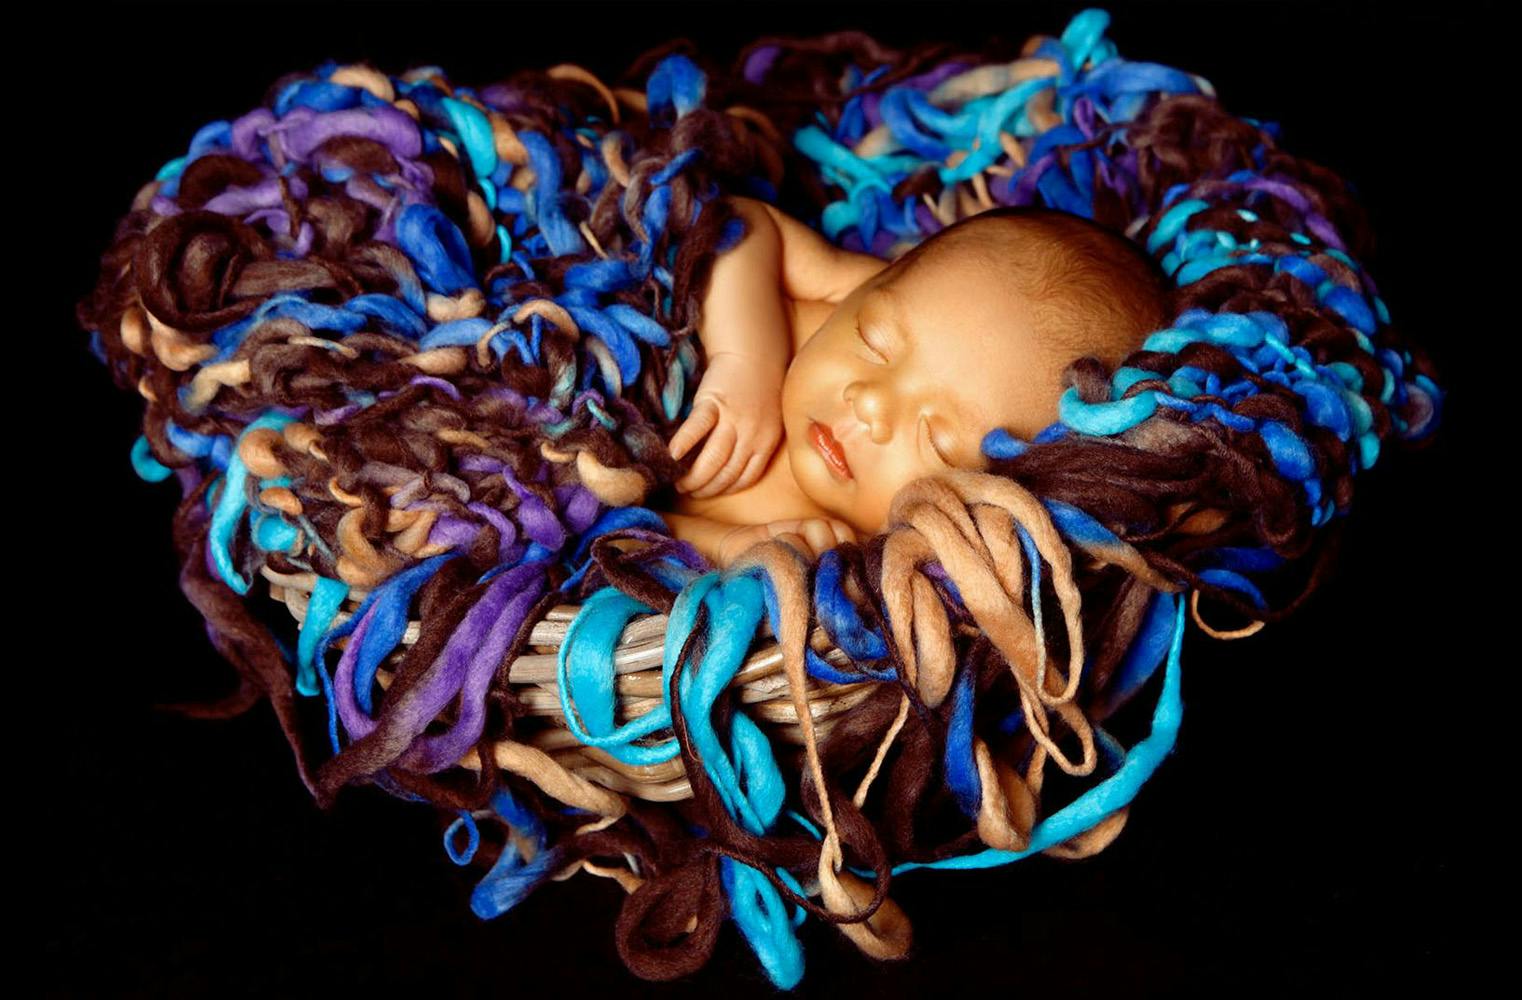 Newborn & Baby Fotoshooting | Erinnerungen für die Ewigkeit